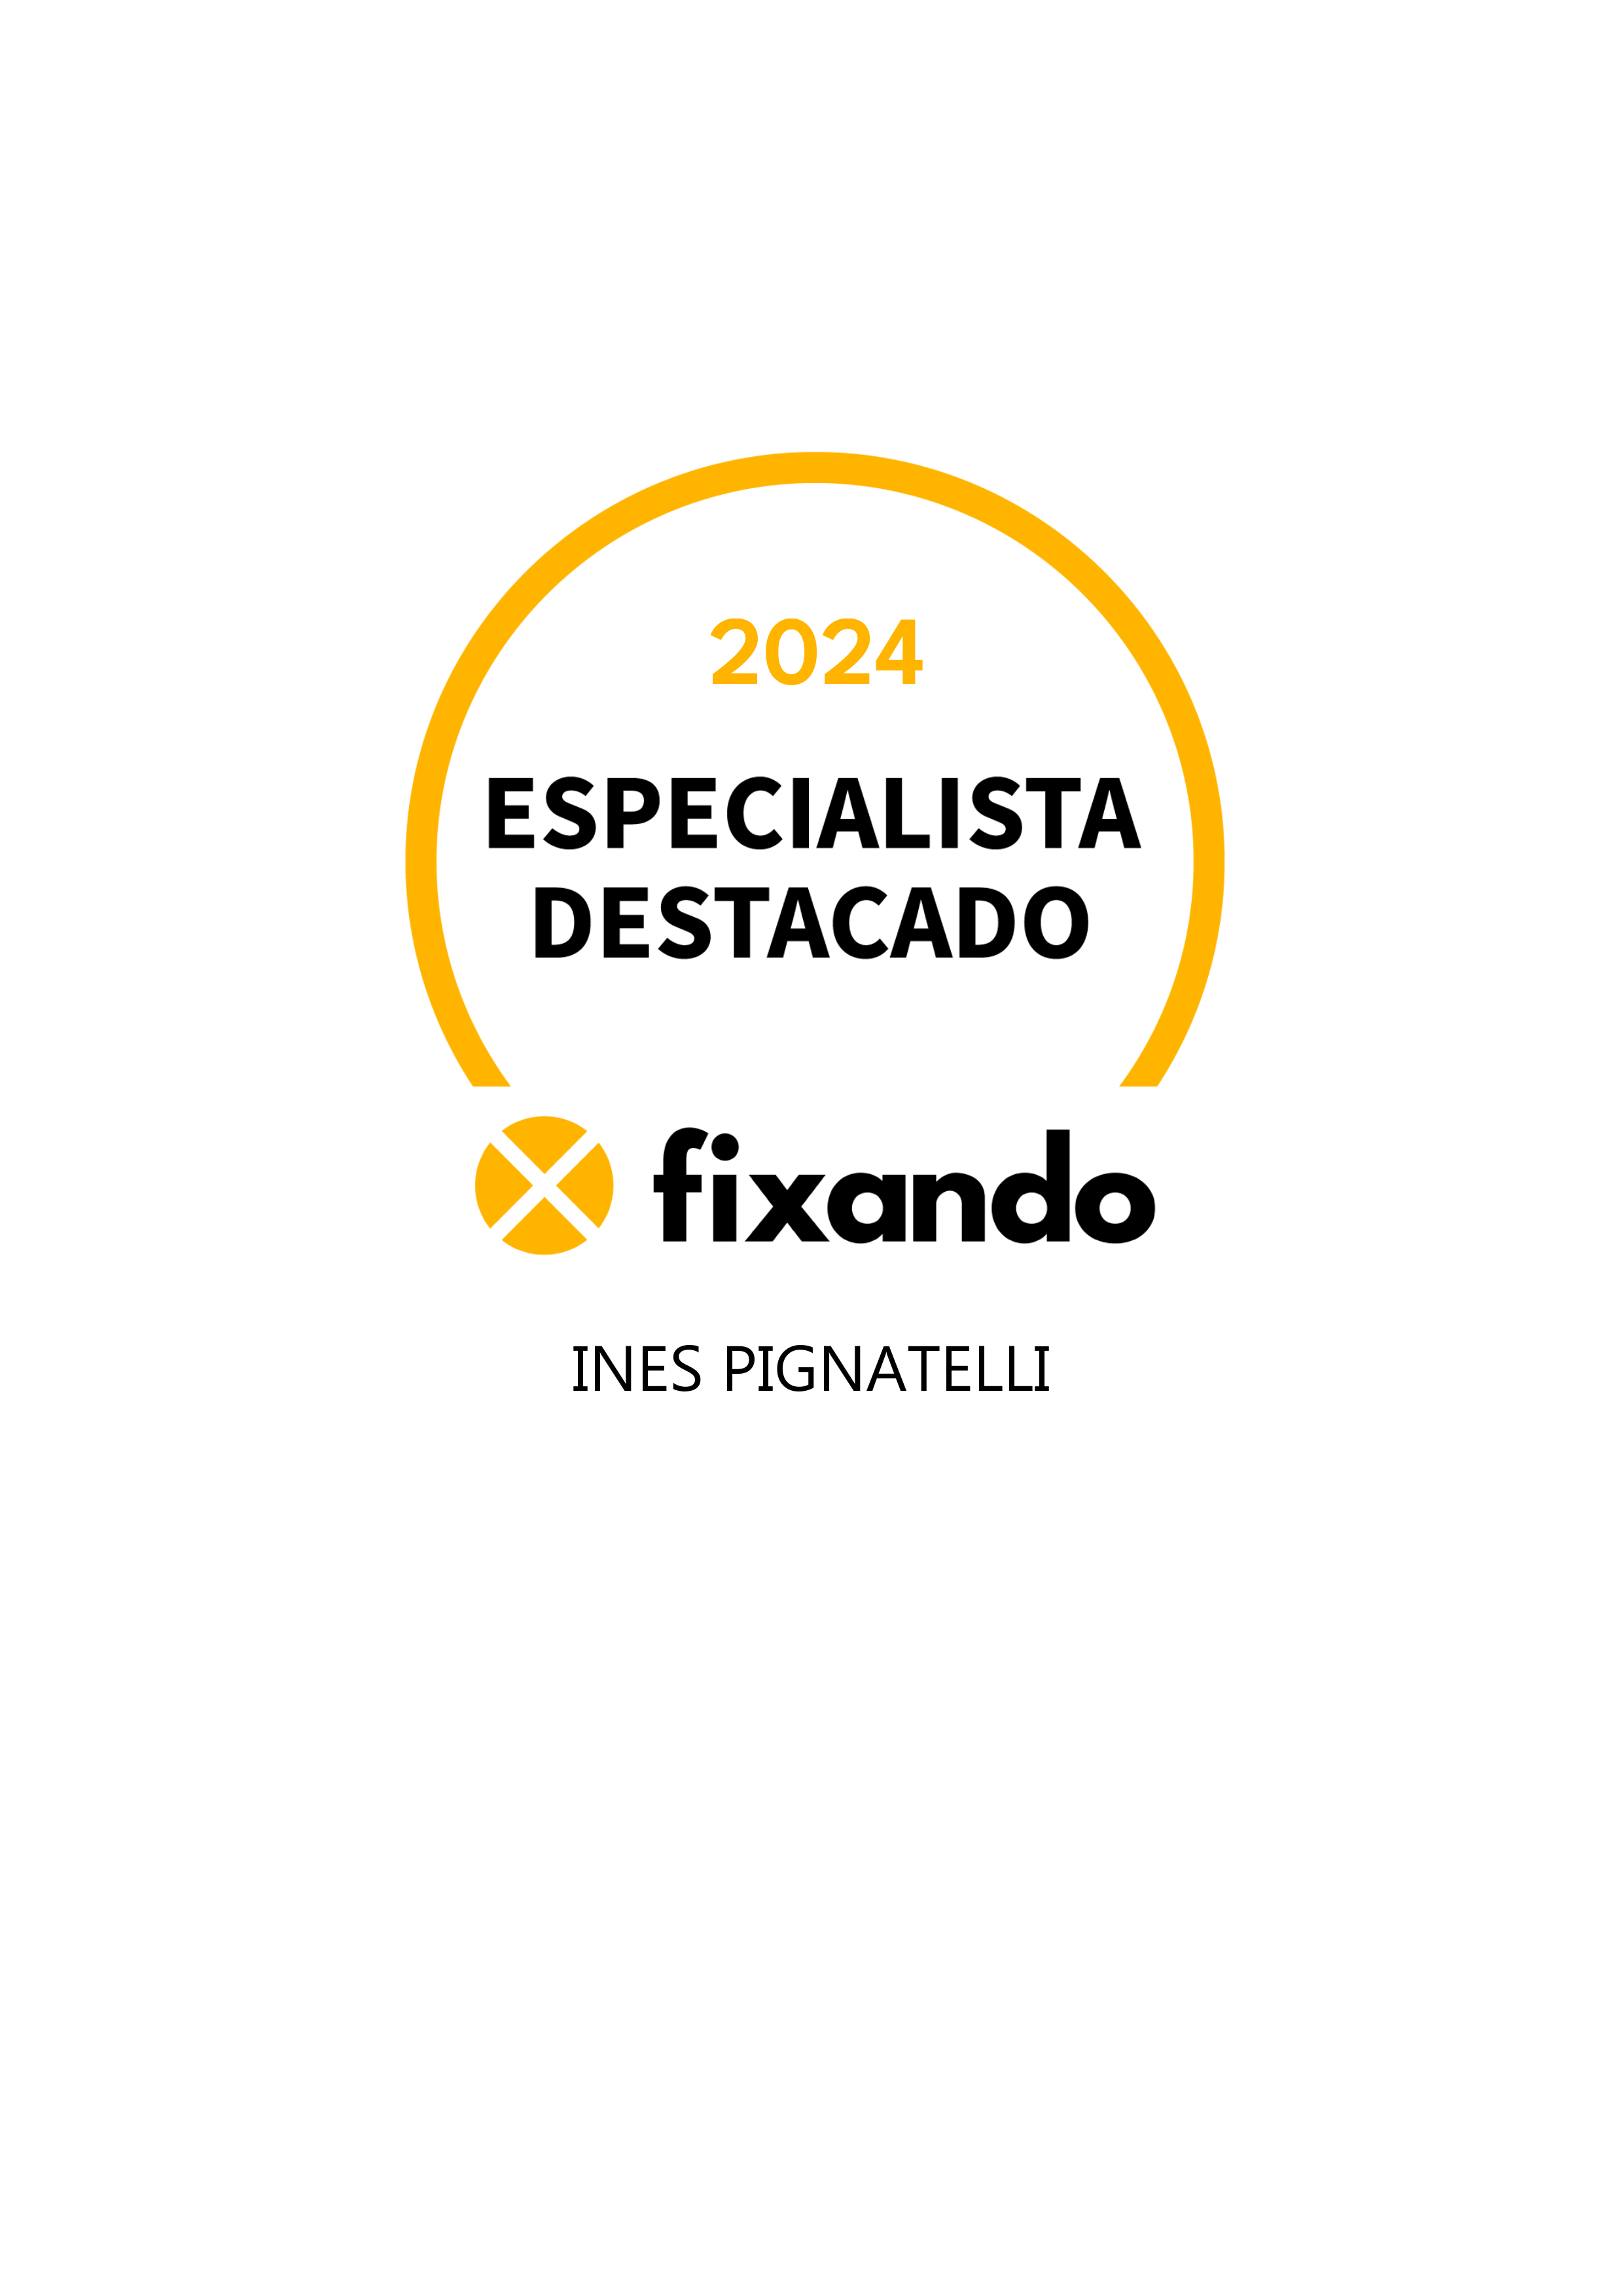 Ines Pignatelli - Sintra - Desenvolvimento de Aplicações iOS